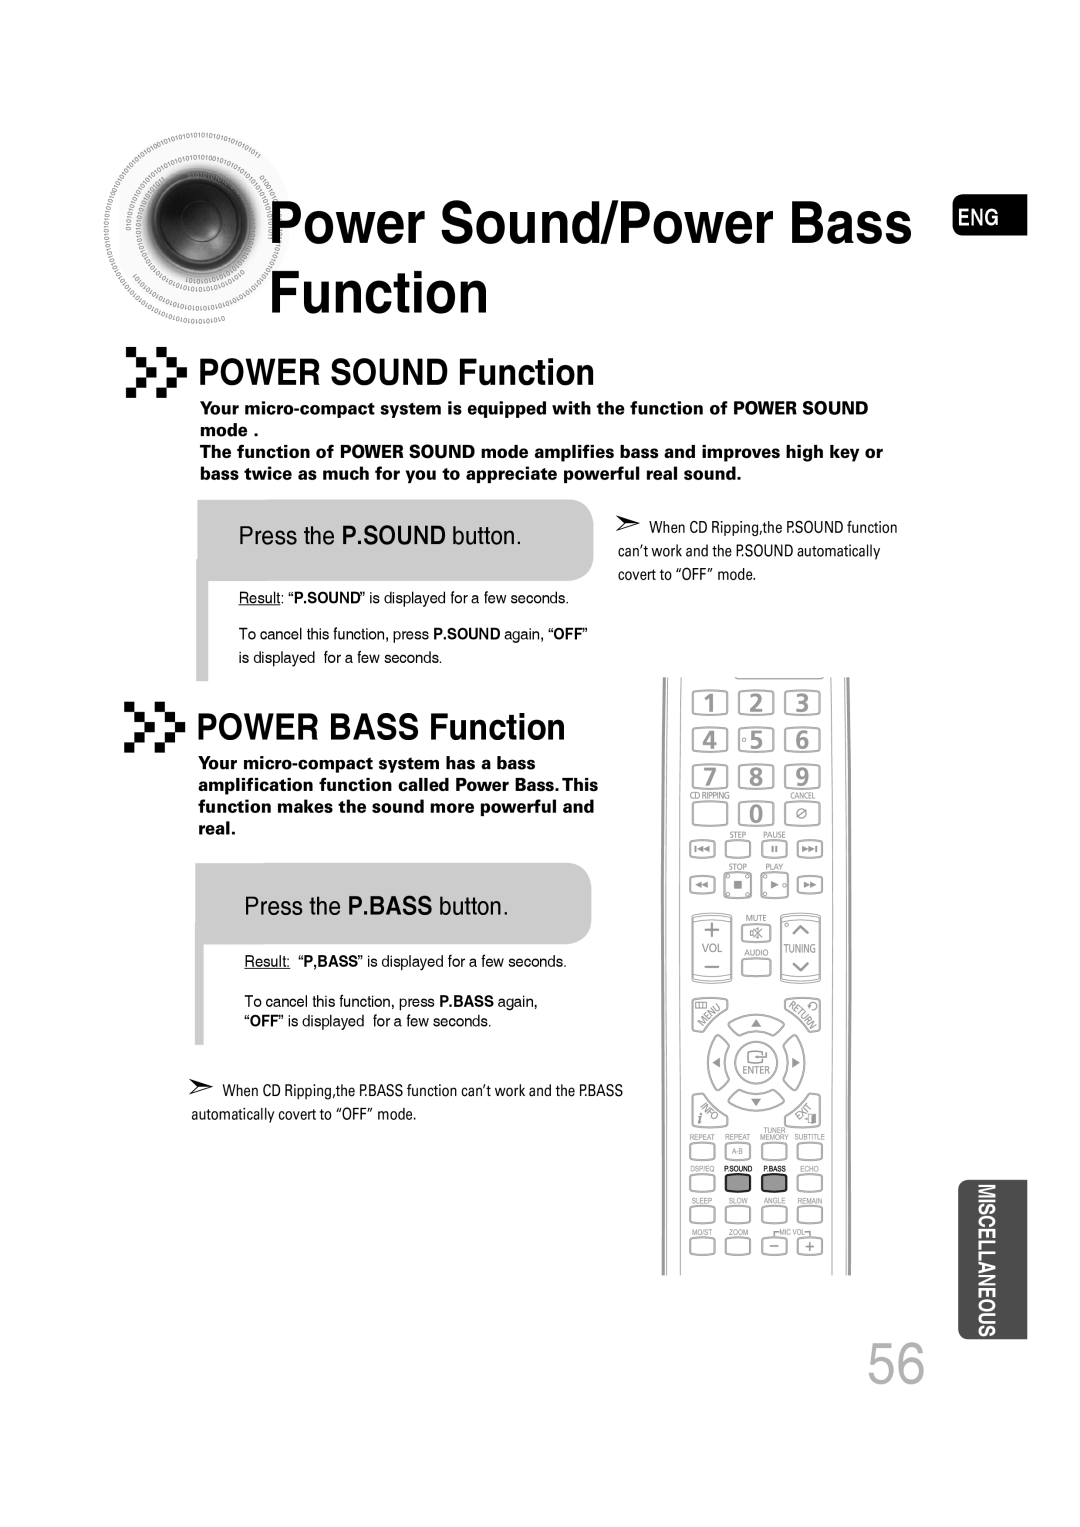 Samsung MM-C430D Power Sound/Power Bass ENG Function, POWER SOUND Function, POWER BASS Function, Press the P.SOUND button 